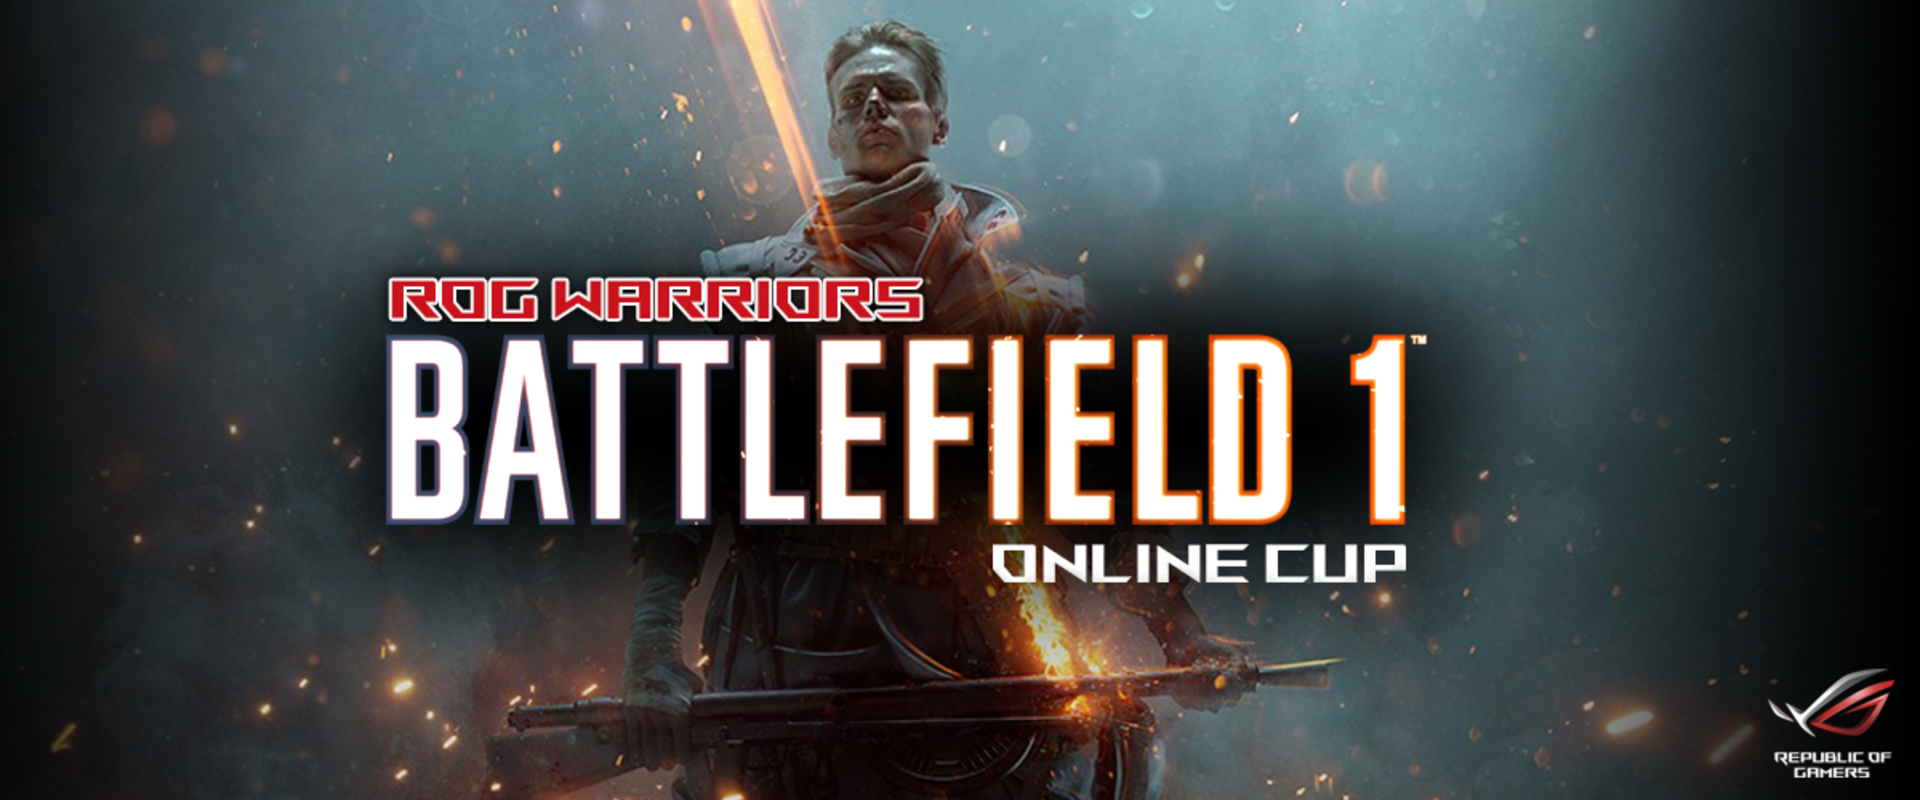 Itt az első magyar Battlefield 1 verseny menetrendje!